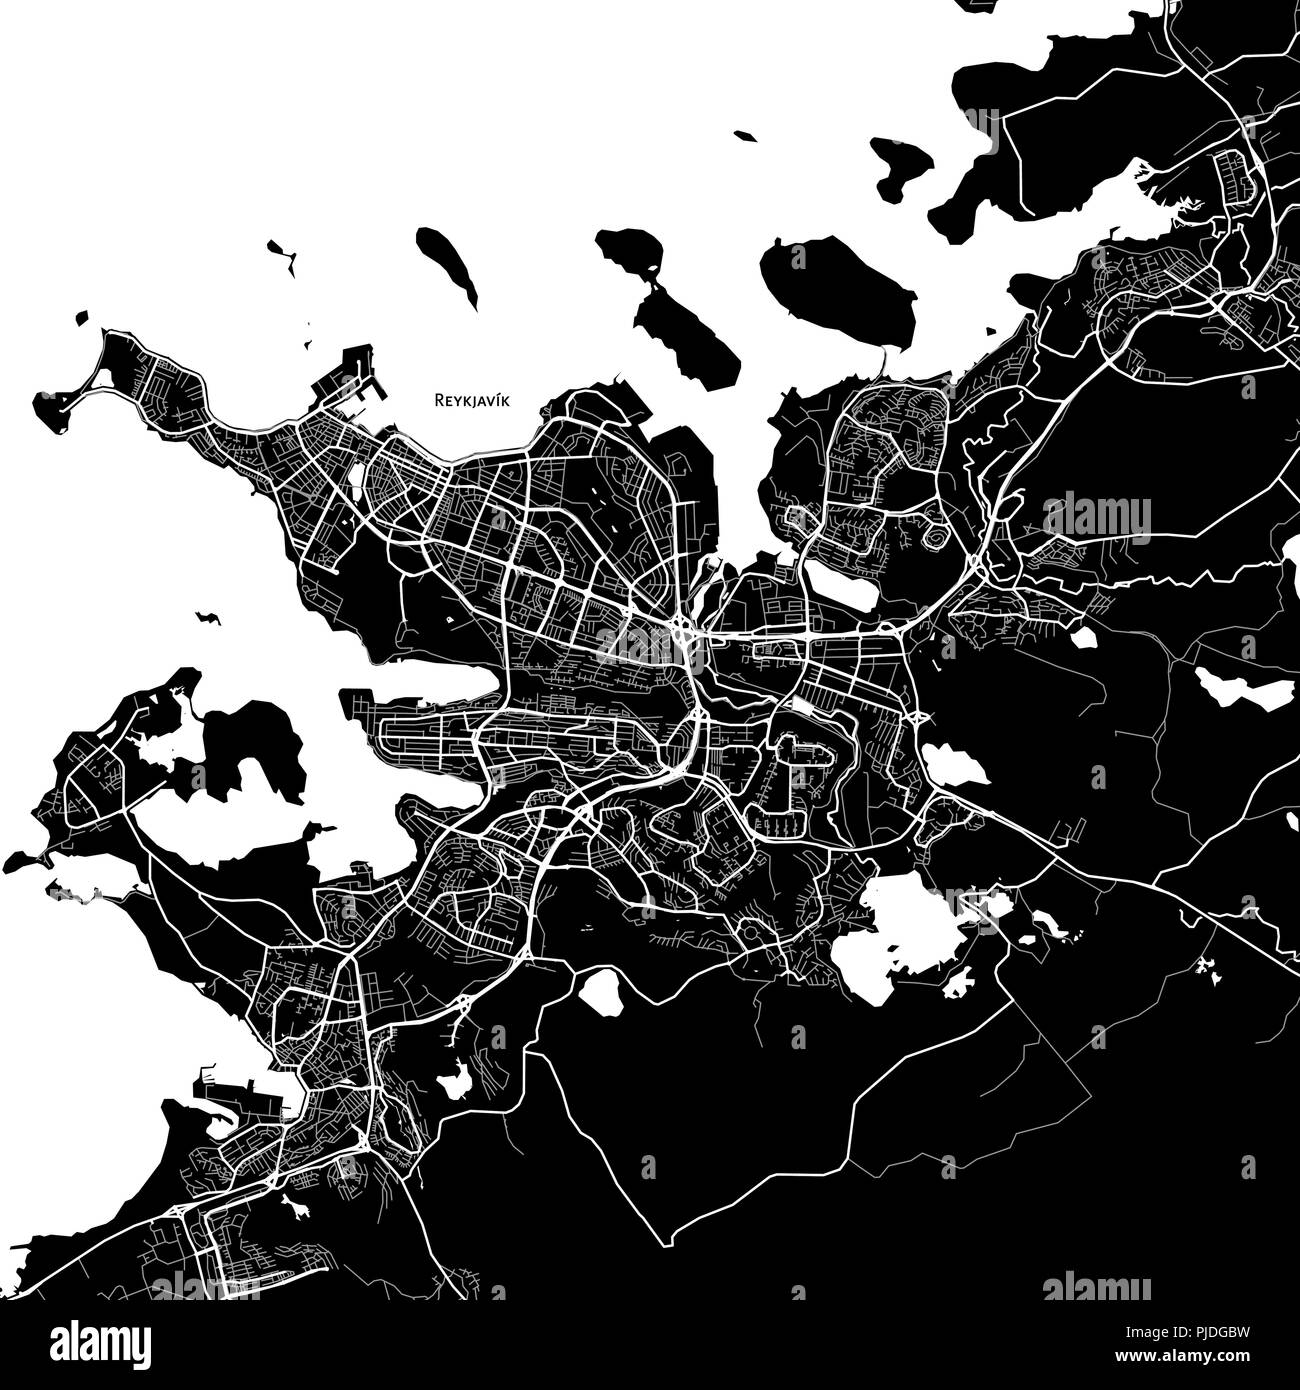 Mapa de la zona de Reykjavik, Iceland. Fondo oscuro versión para infografía y proyectos de comercialización. Ilustración del Vector